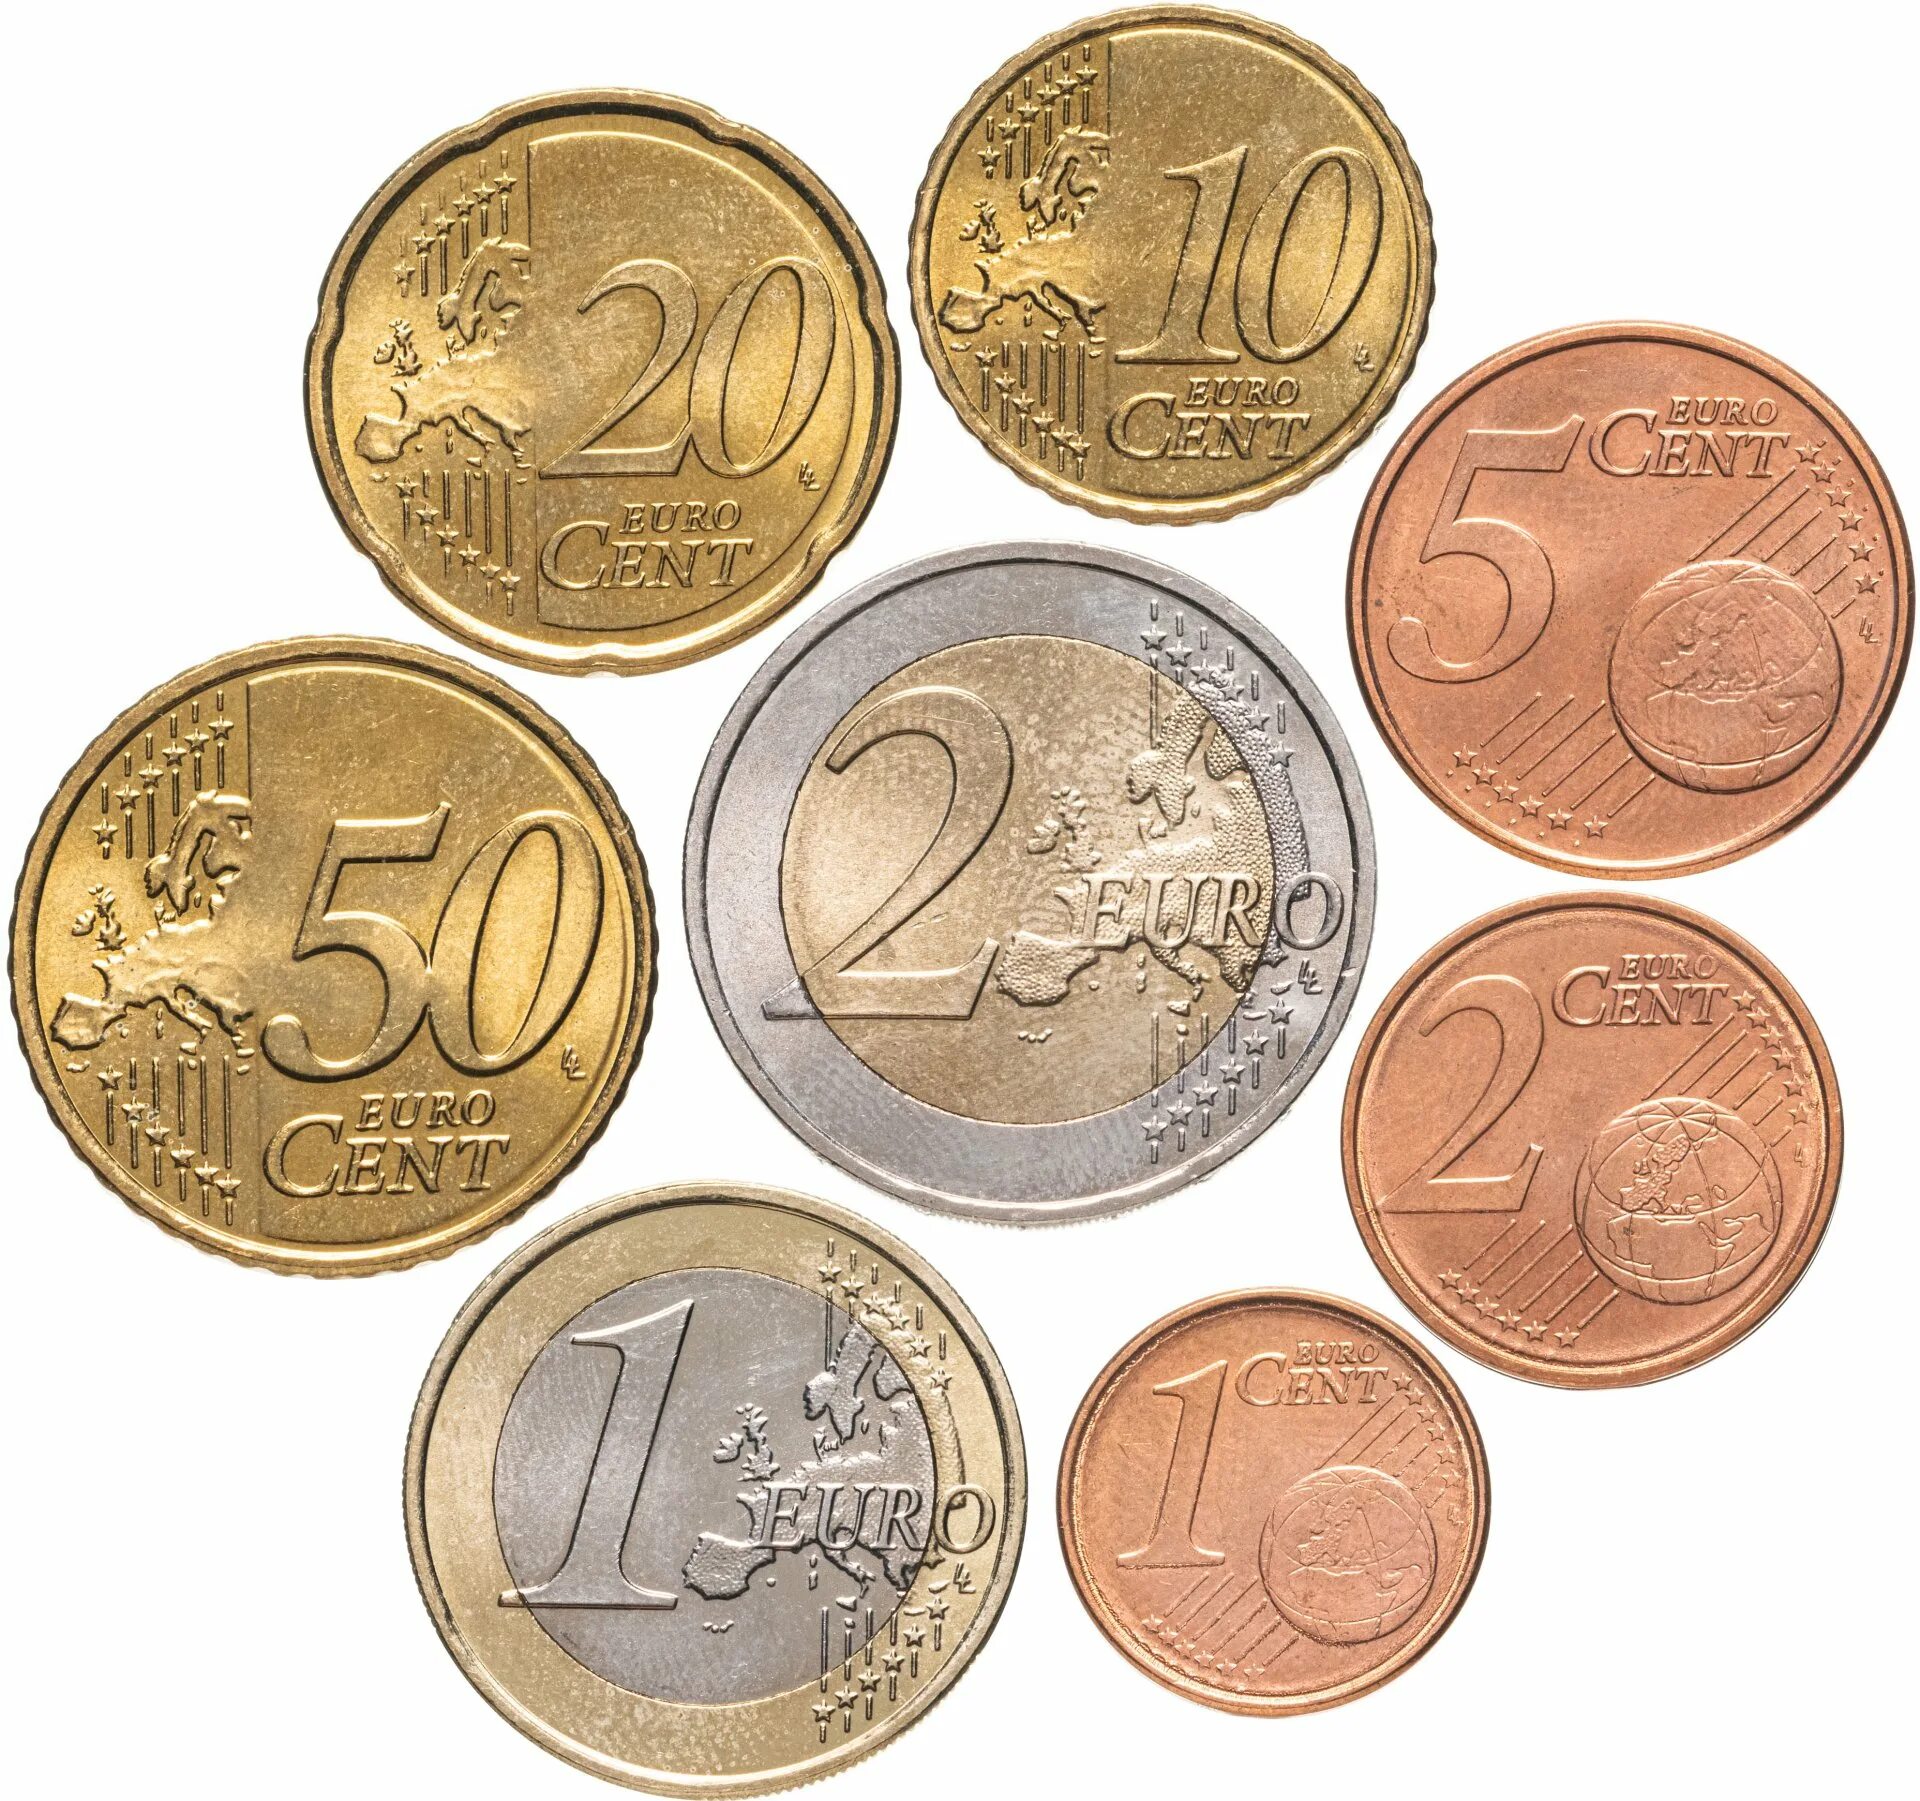 Монета 50 Euro Cent. 1 Евро цент монета. Евро Монетка 1 цент. Монетка 10 евро цент в рублях.